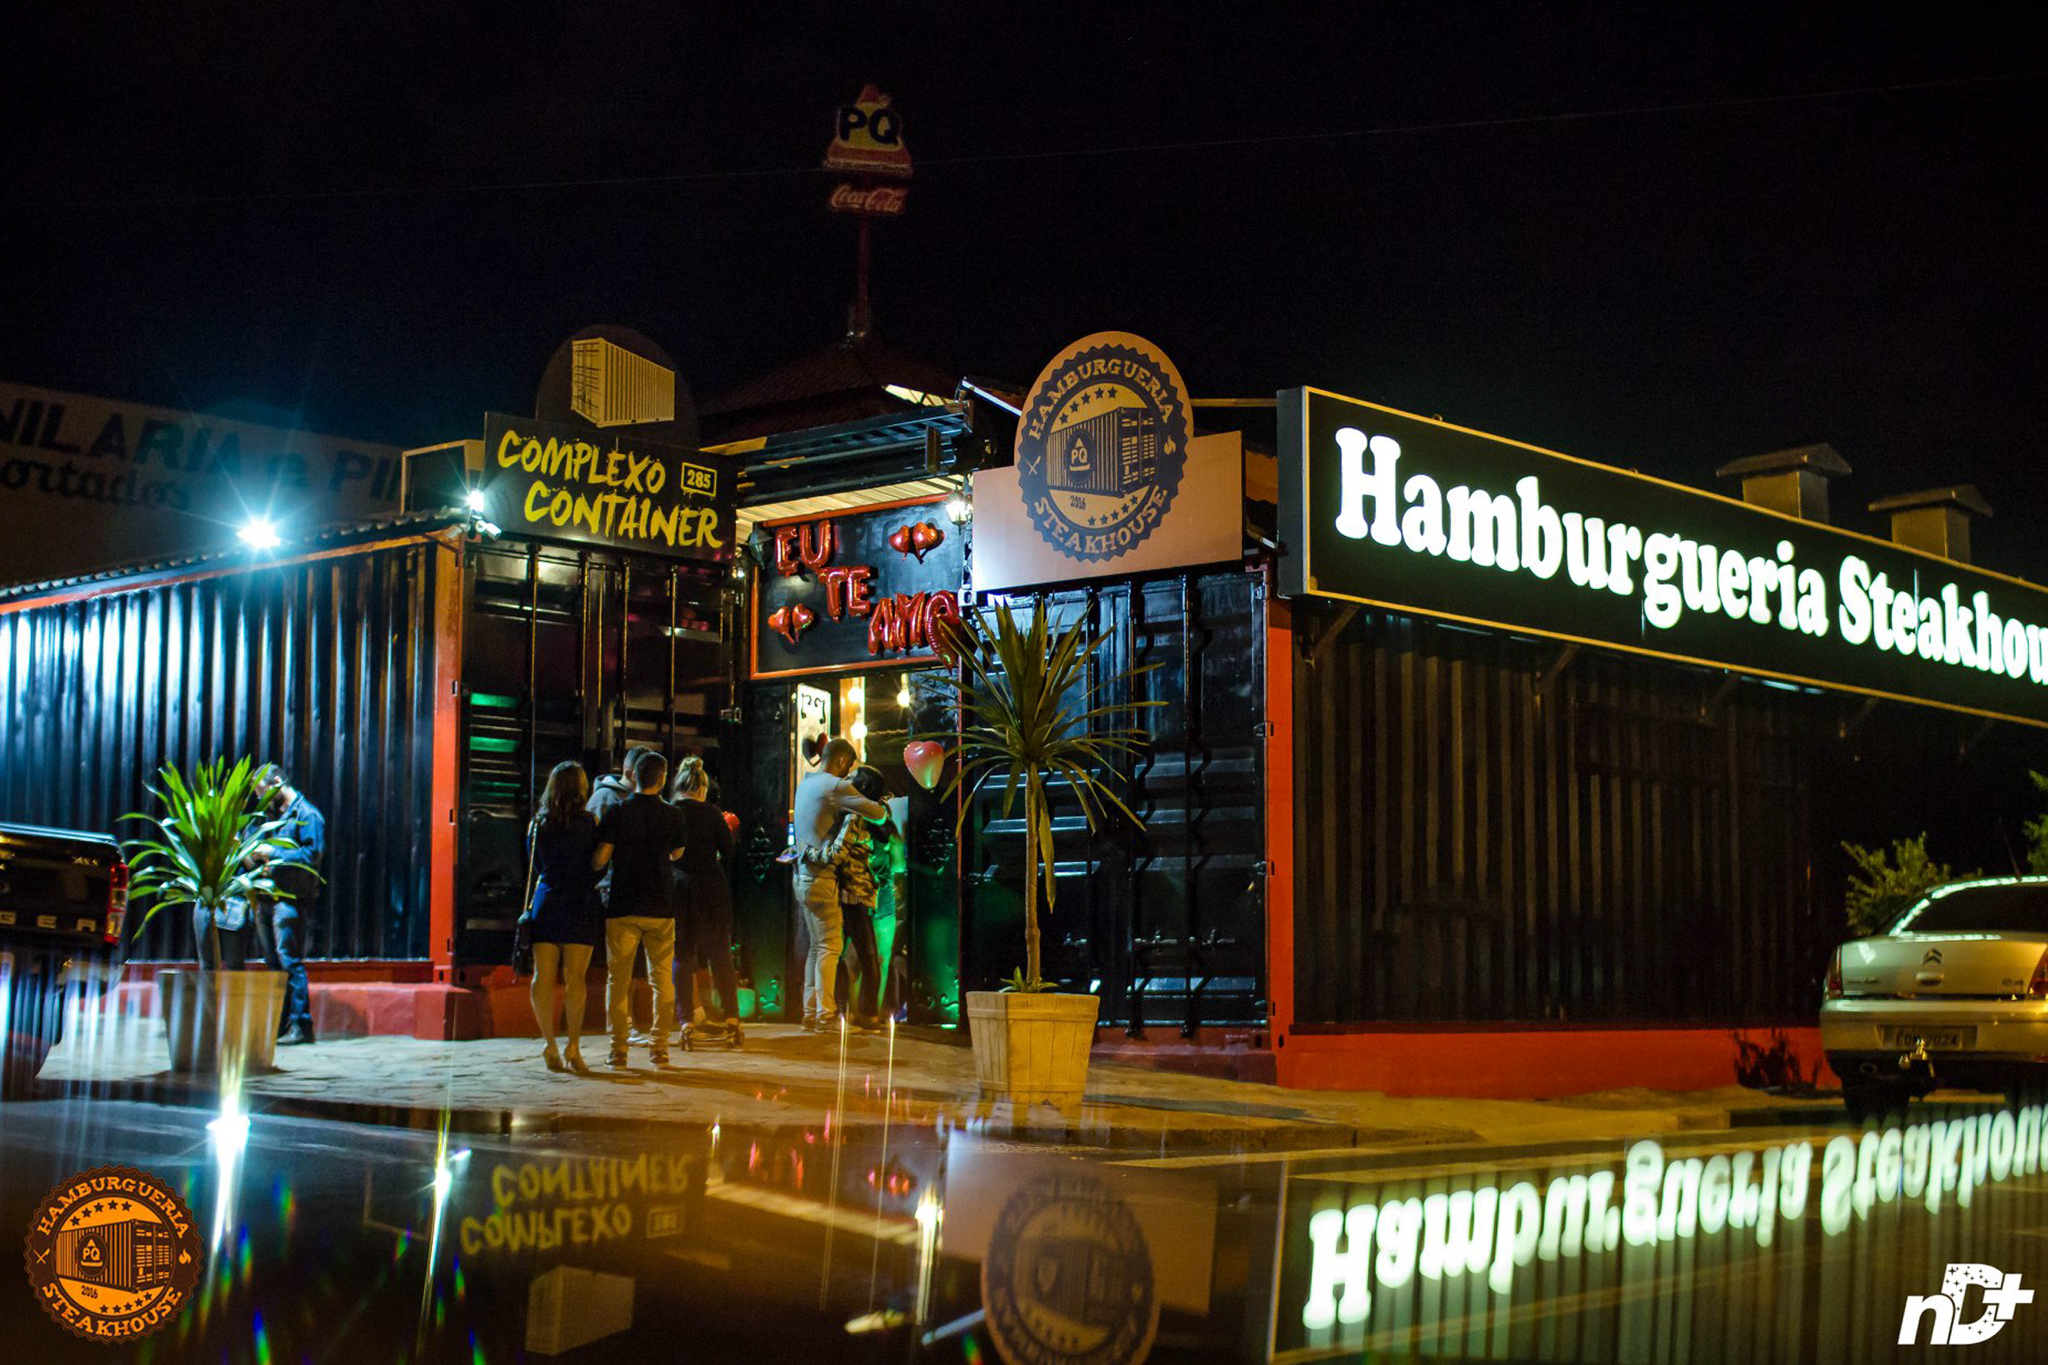 Hamburgueria & Steakhouse PQ